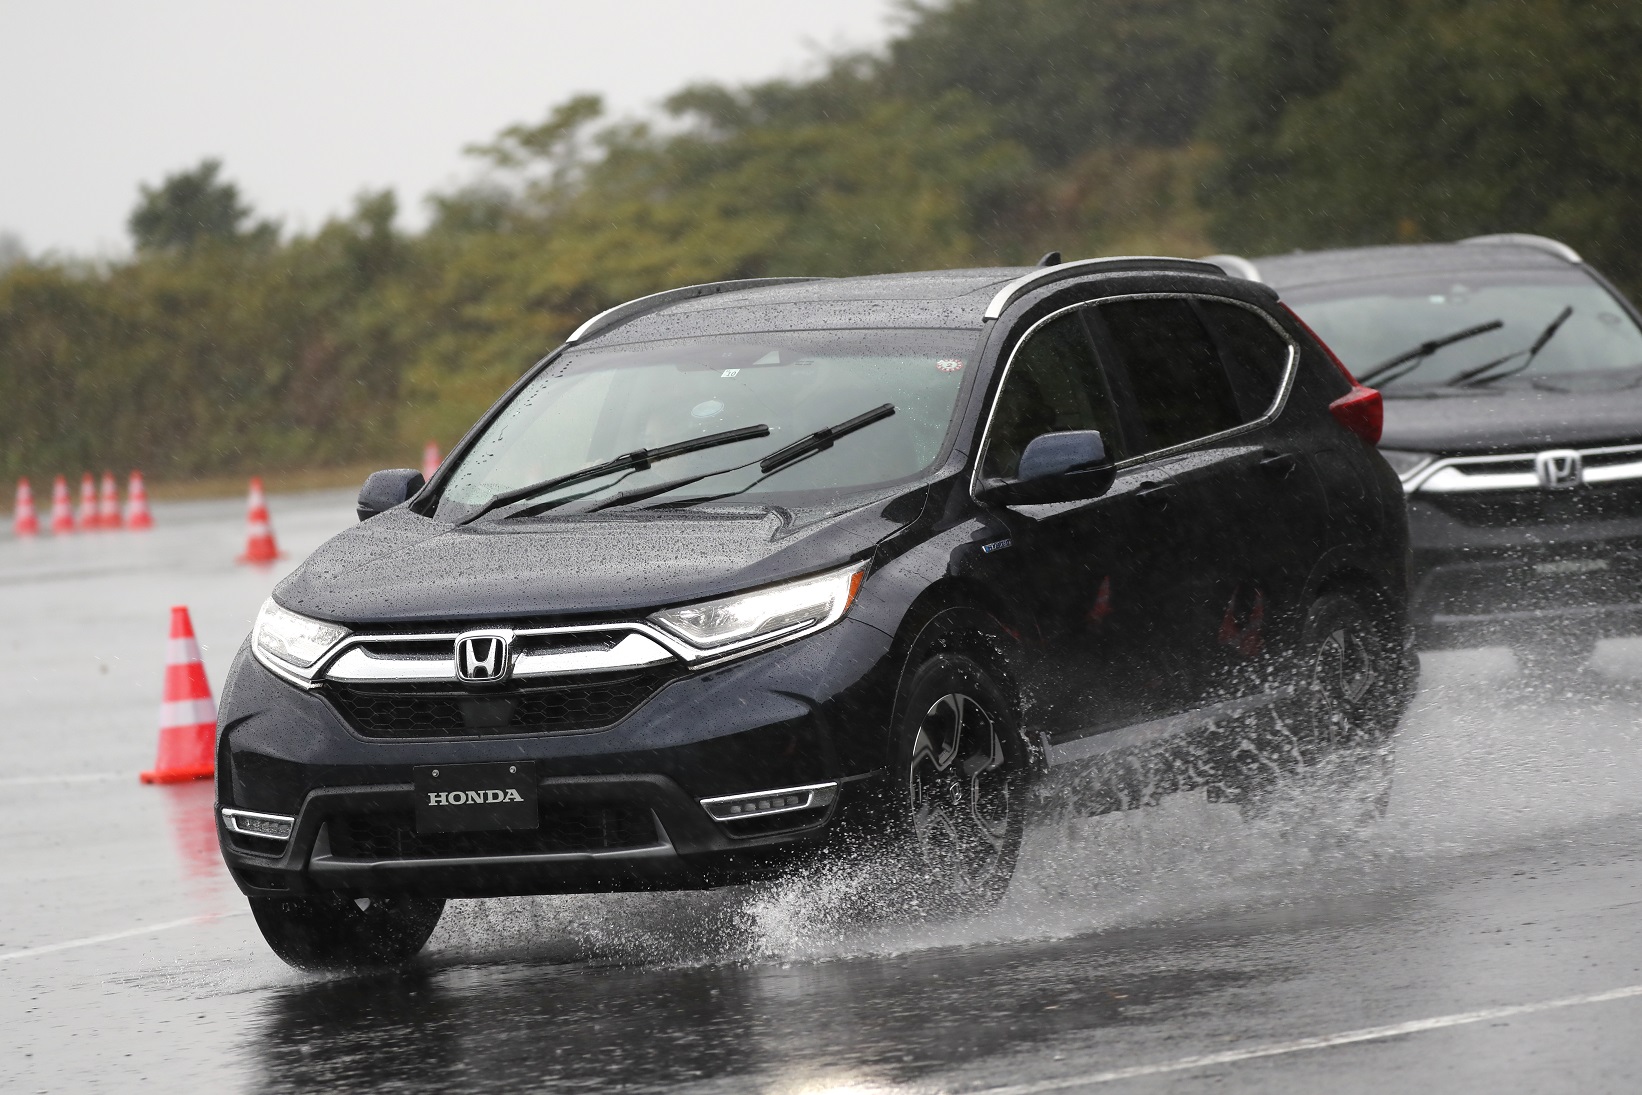 TopGear | 2019 Honda Insight & CR-V Hybrid driven - no ...